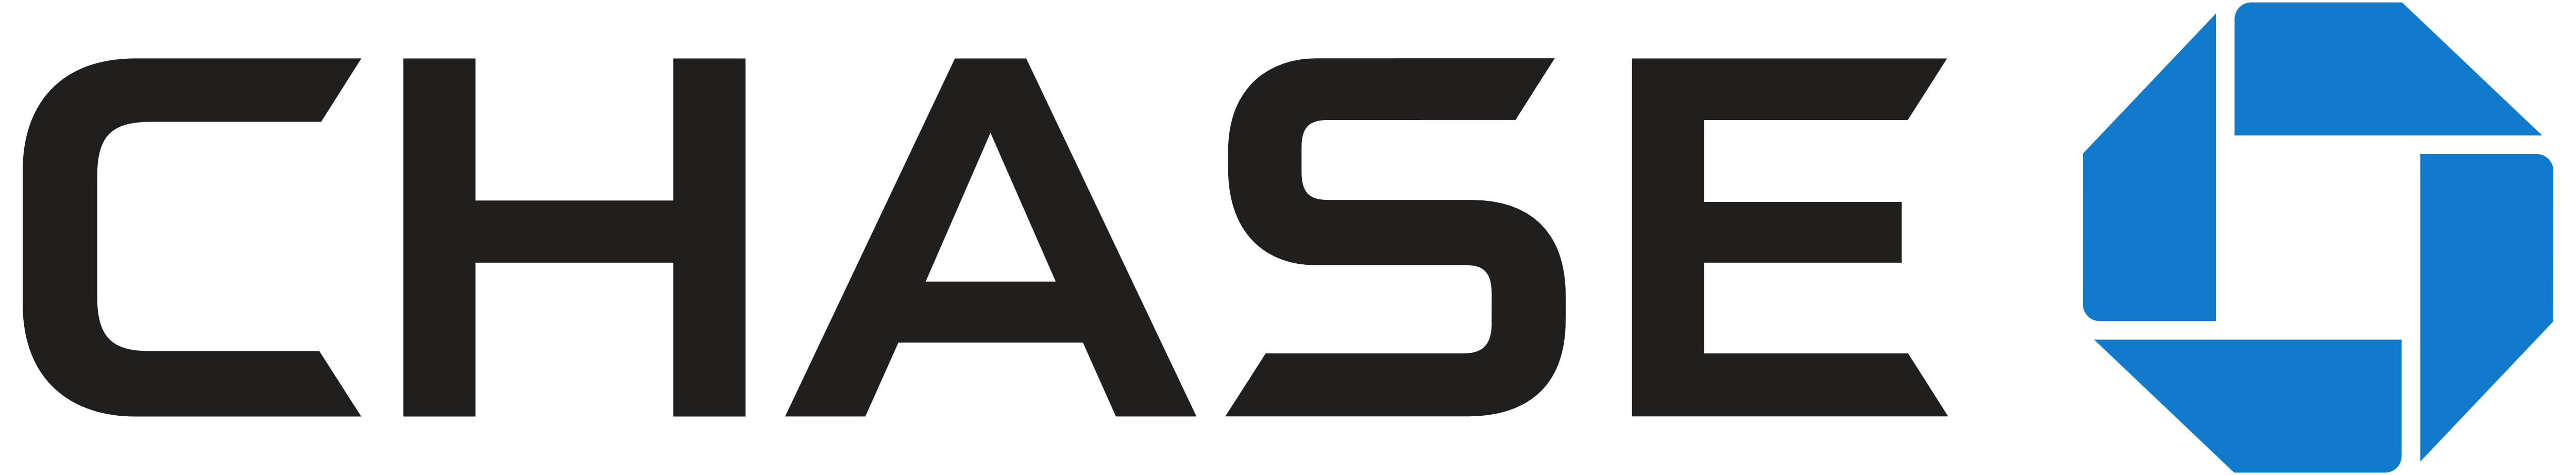 Chase Bank Logo - Chase Bank – Logos Download